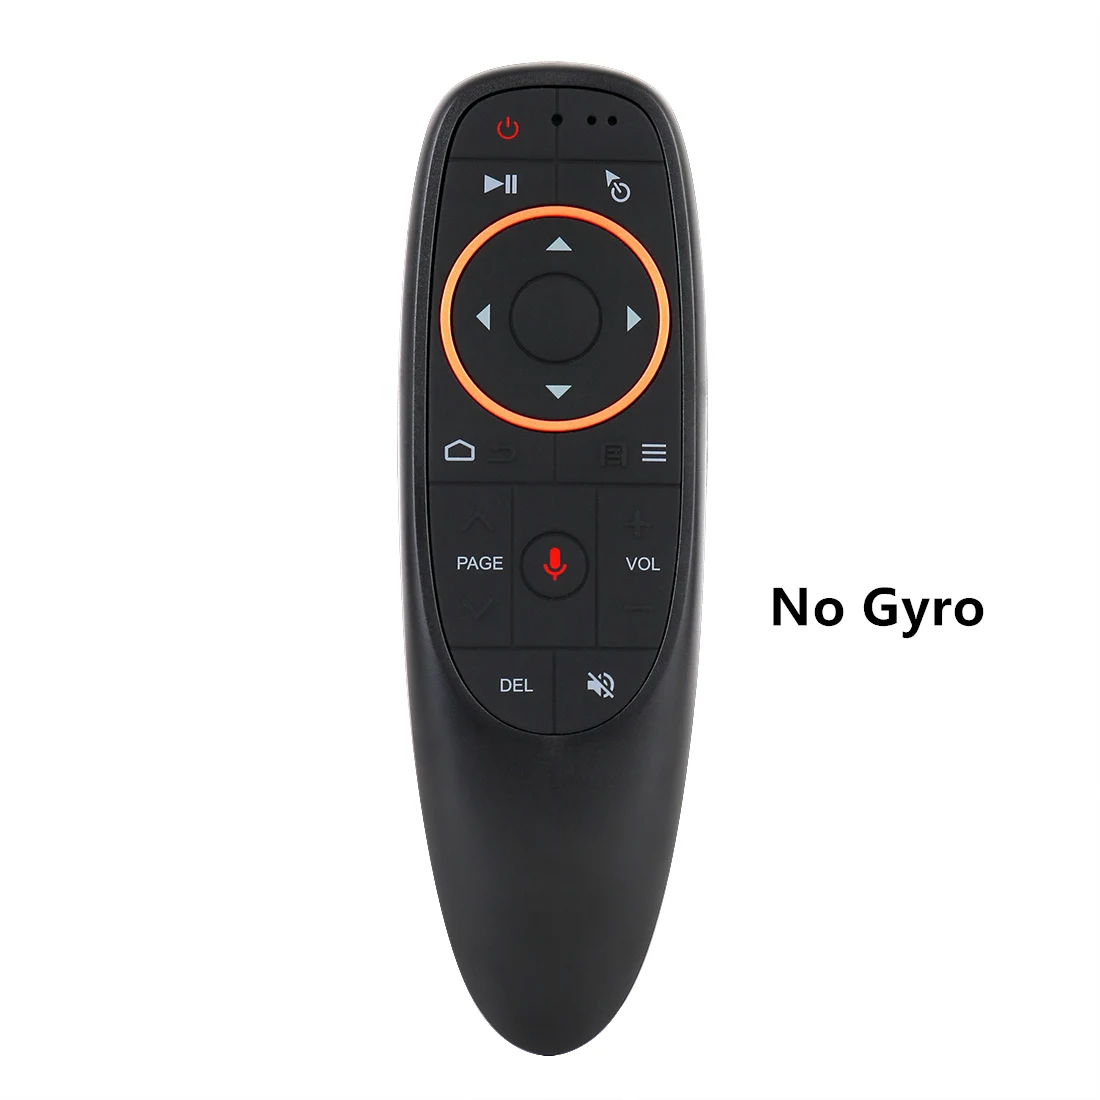 HUACP G10 2,4G пульт дистанционного управления Беспроводная Голосовая воздушная мышь гироскоп микрофон ИК обучение для Android tv box H96 Max X96 mini - Цвет: Voice No Gyro